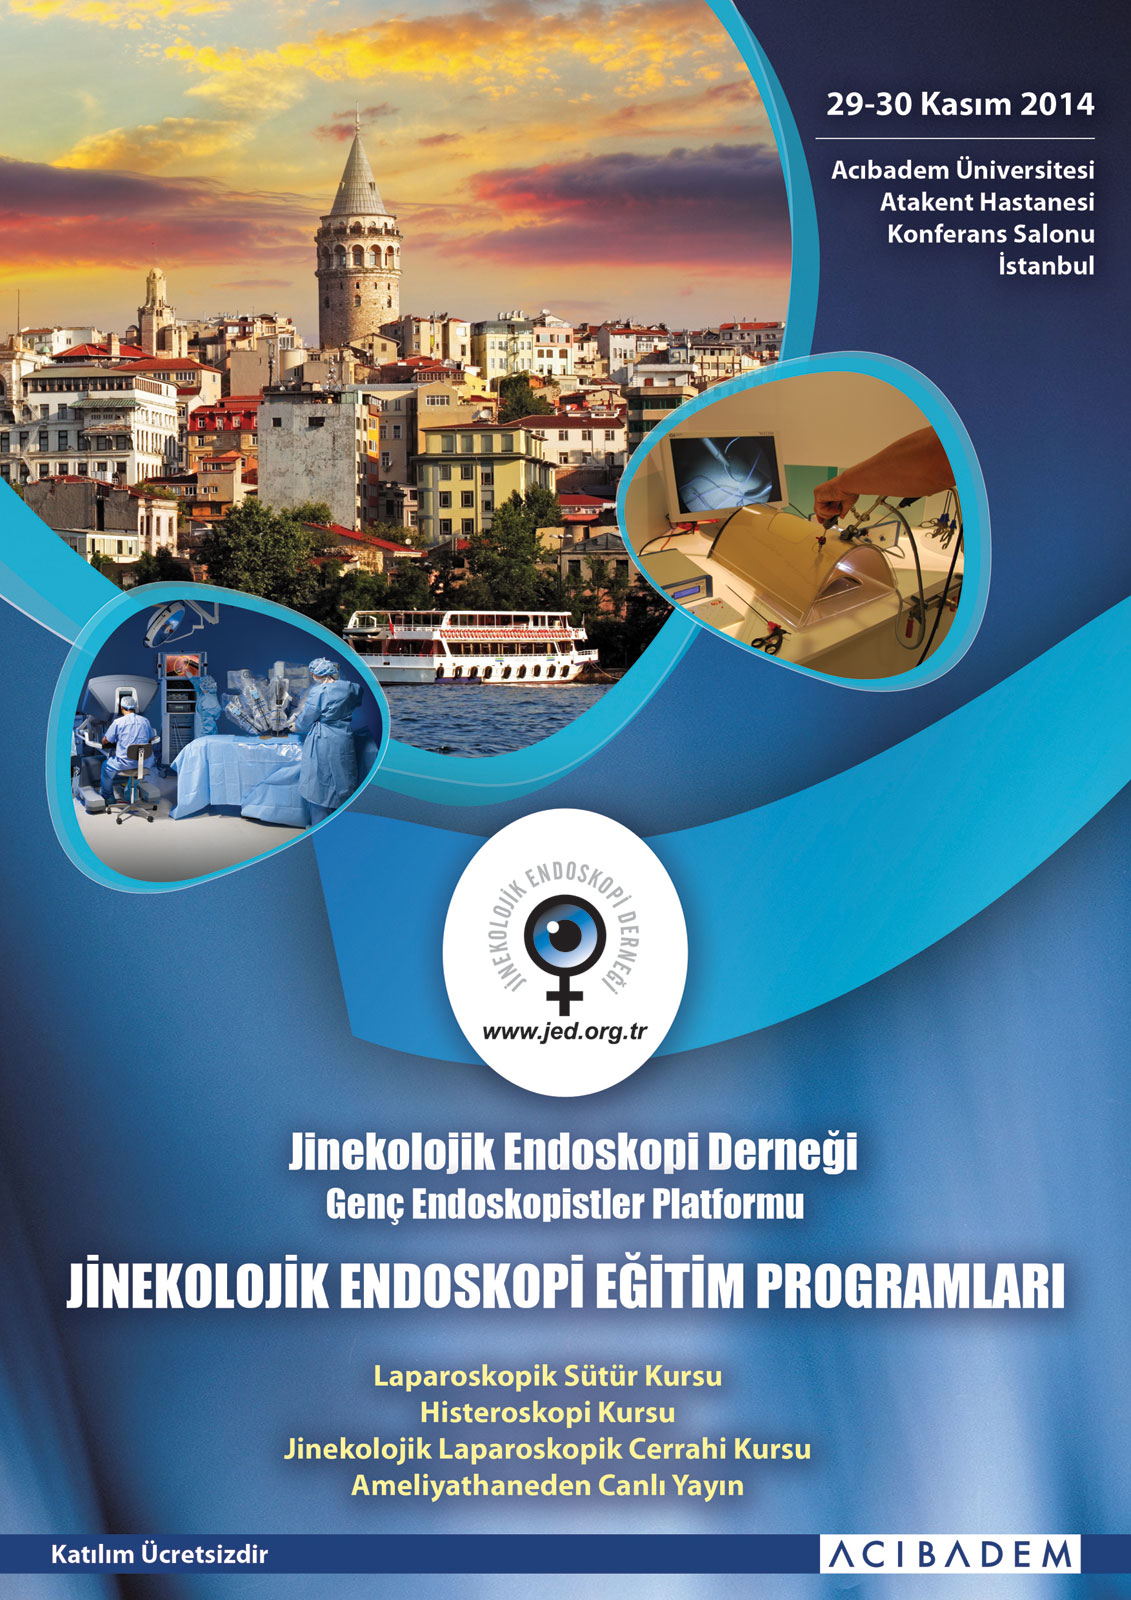 29-30 Kasım 2014 Jinekolojik Endoskopi Eğitimi Acıbadem'de